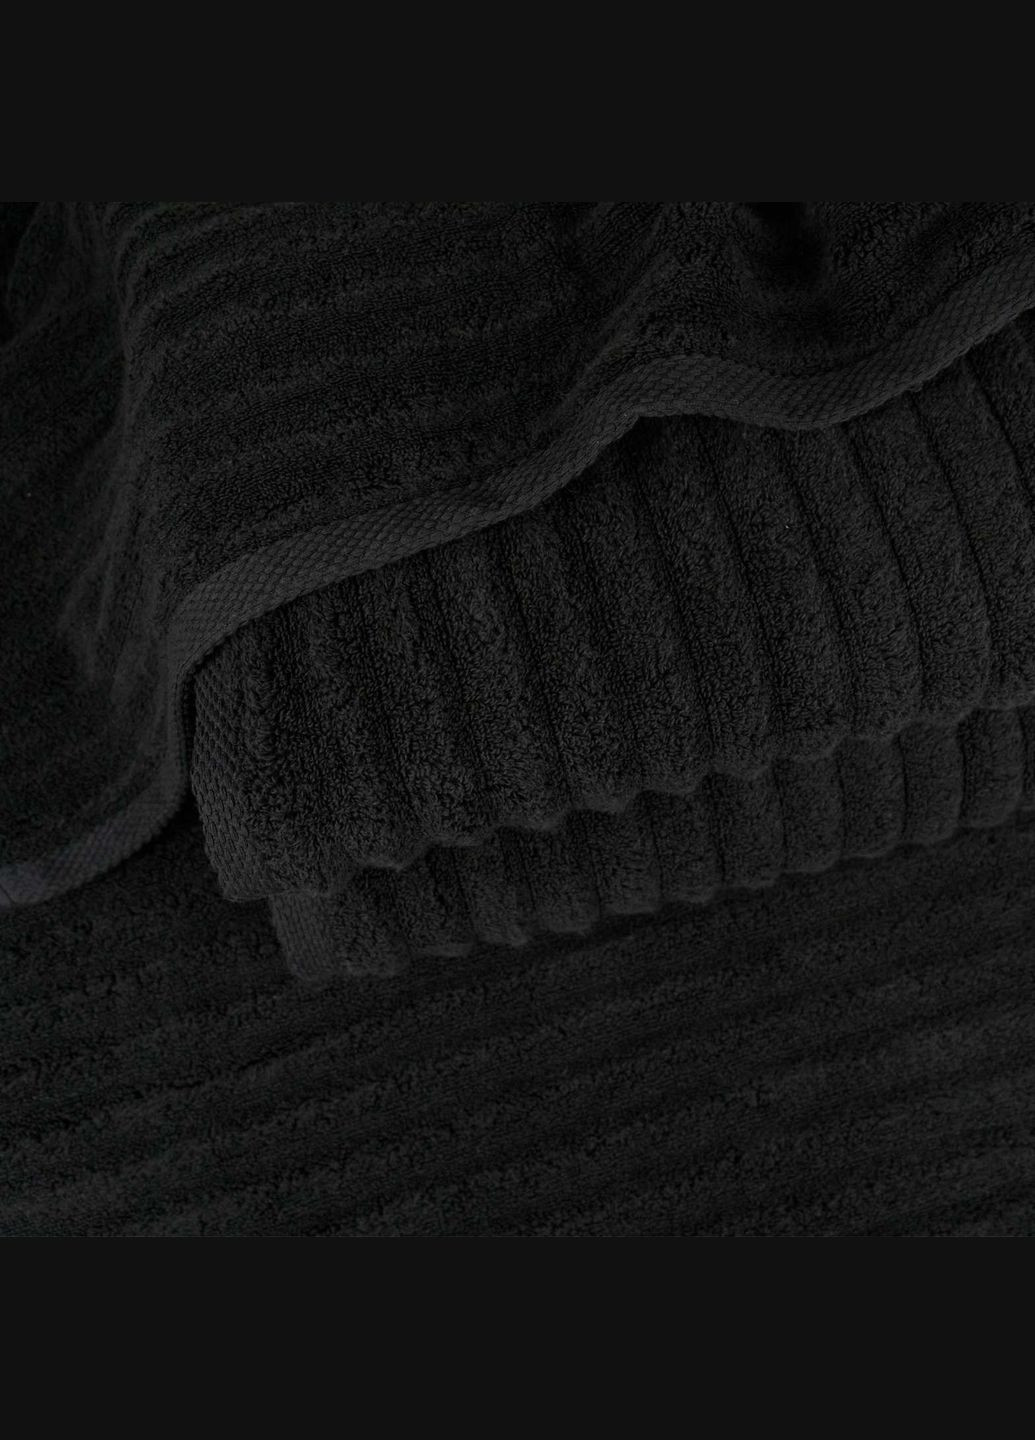 GM Textile полотенце махровое 50x90см премиум качества зеро твист 550г/м2 (графит) графитовый производство - Узбекистан